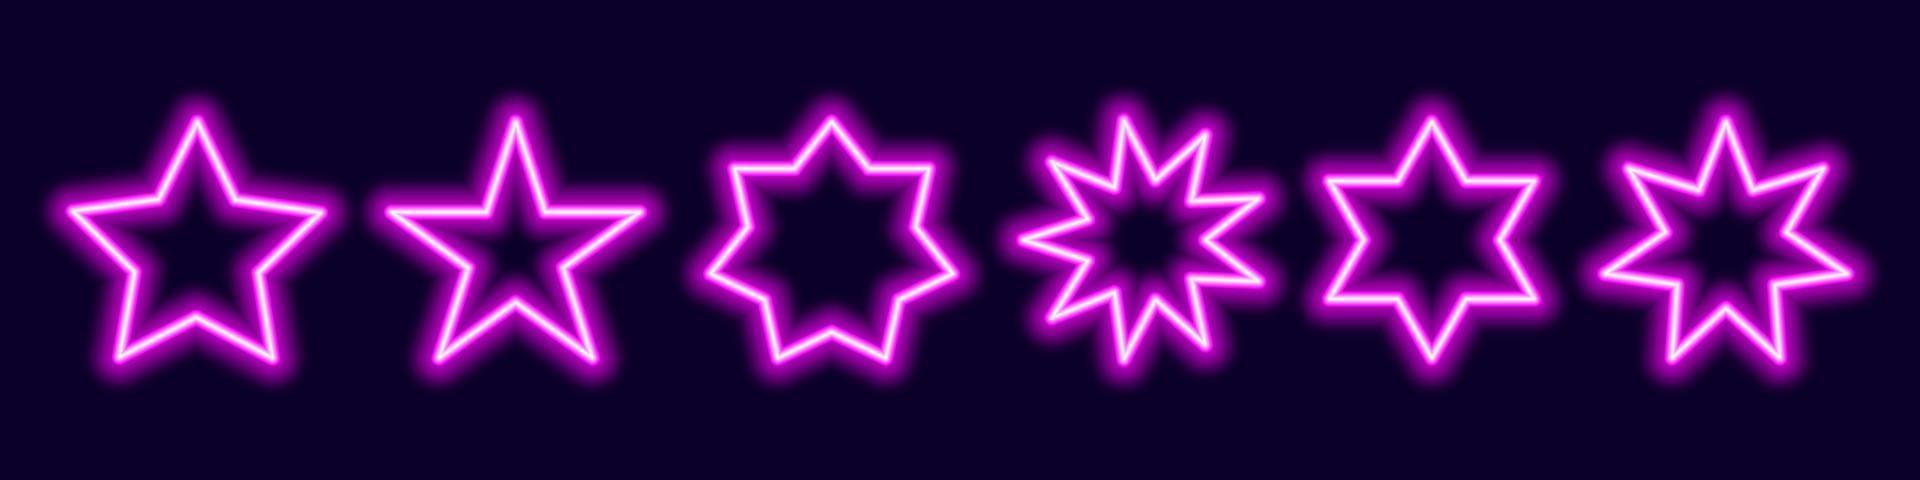 estrelas poligonais de néon. pentágonos roxos e figuras multifeixe com brilhos noturnos. festas de synthwave a laser e símbolo de sinalização em estilo retrô moderno. vetor